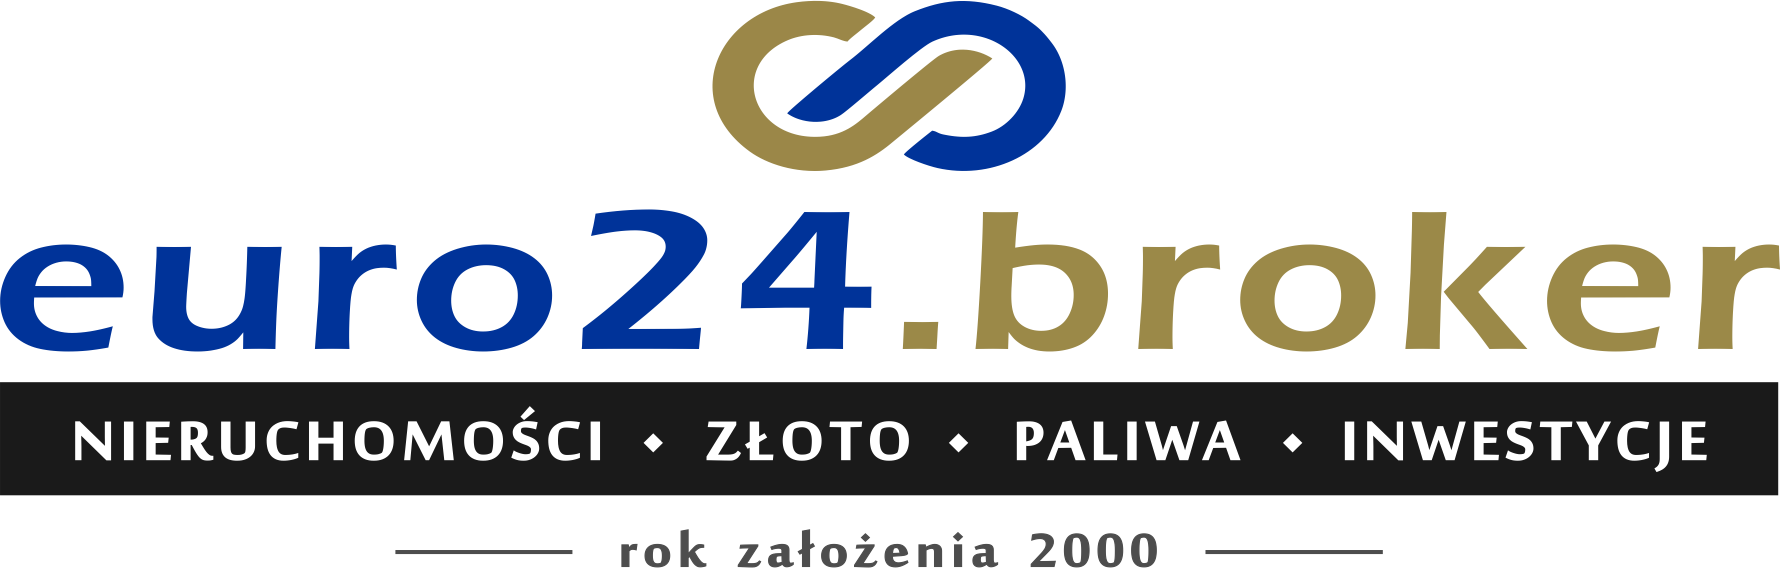 Euro24.broker | Nieruchomości • Inwestycje • Surowce